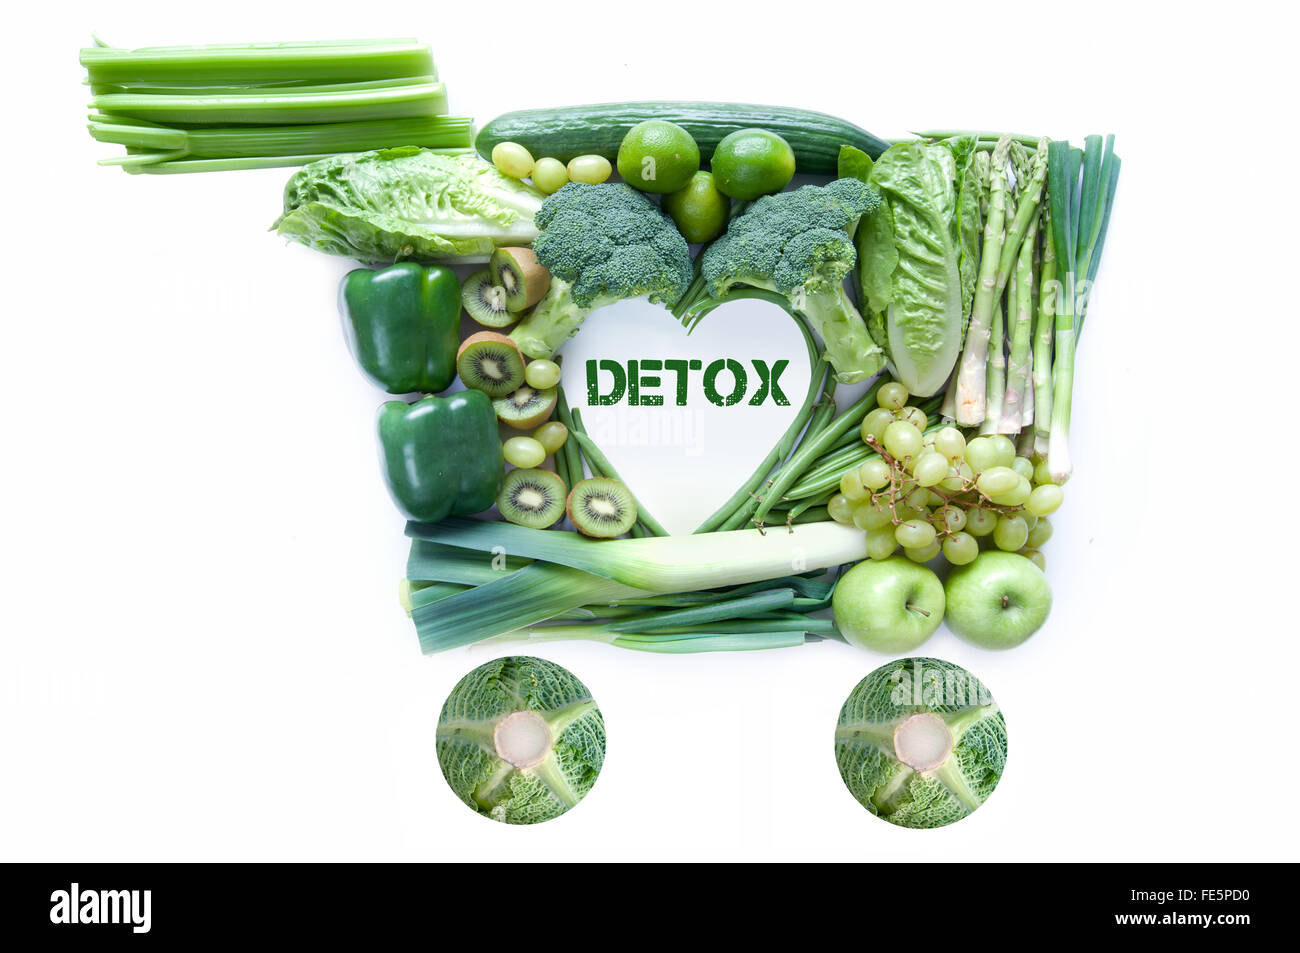 Fresco verde negozi di generi alimentari in forma di un carrello della spesa con detox nel centro Foto Stock